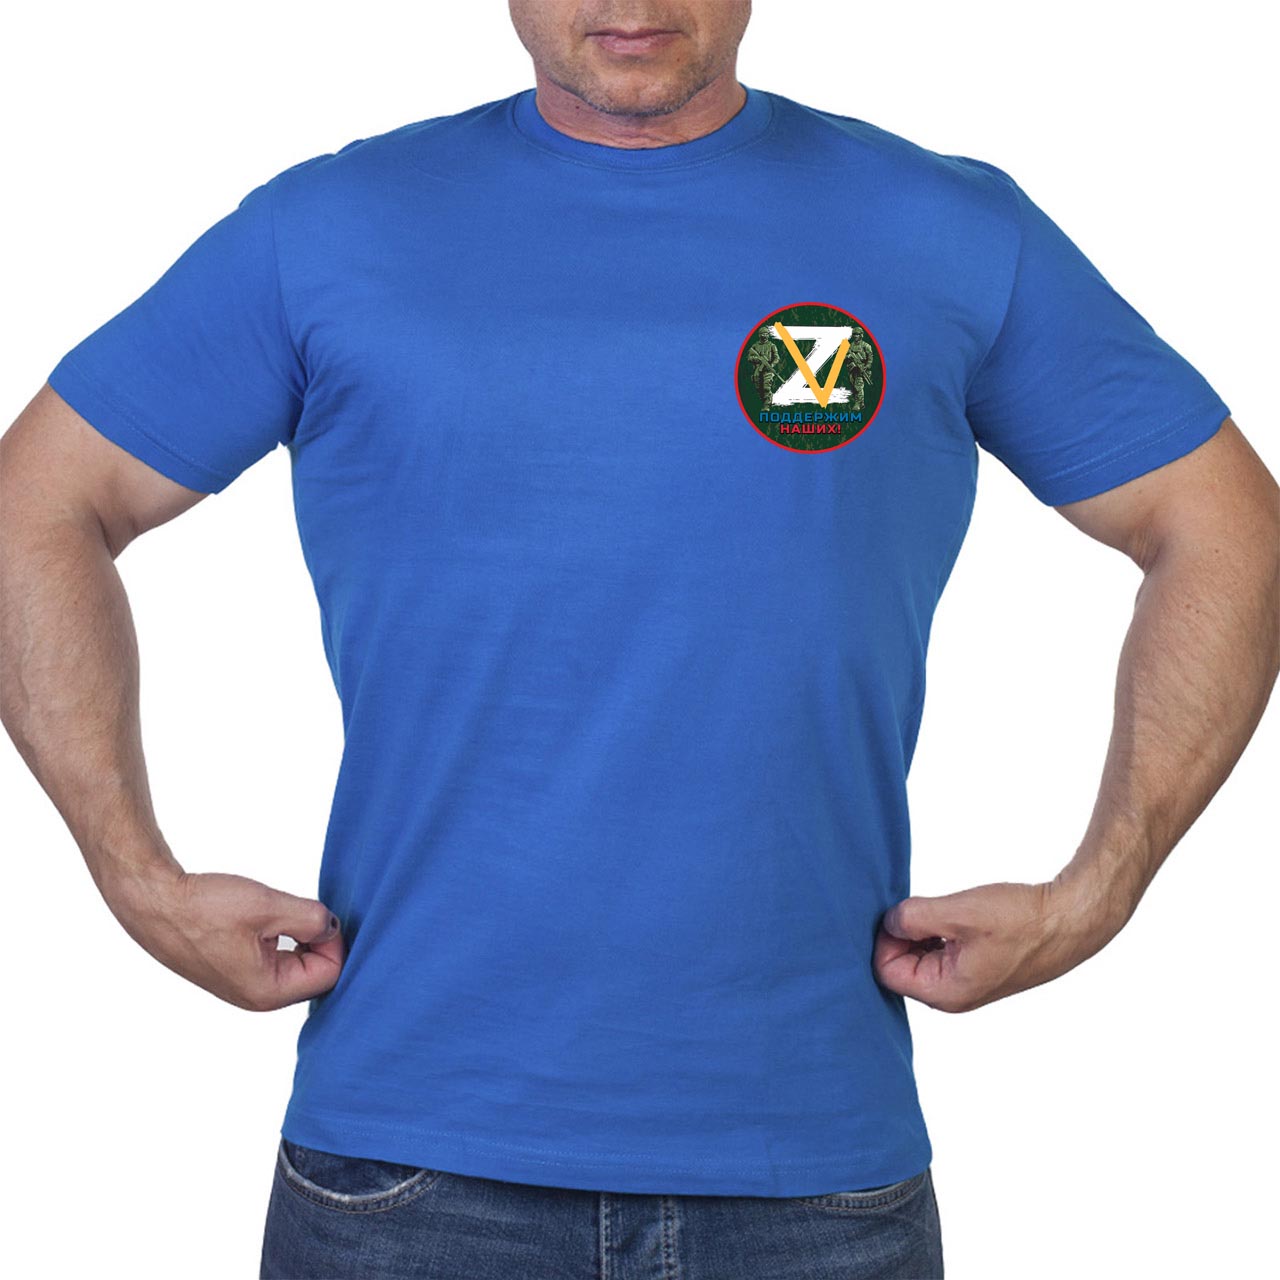 Недорогая мужская футболка с российской символикой Z